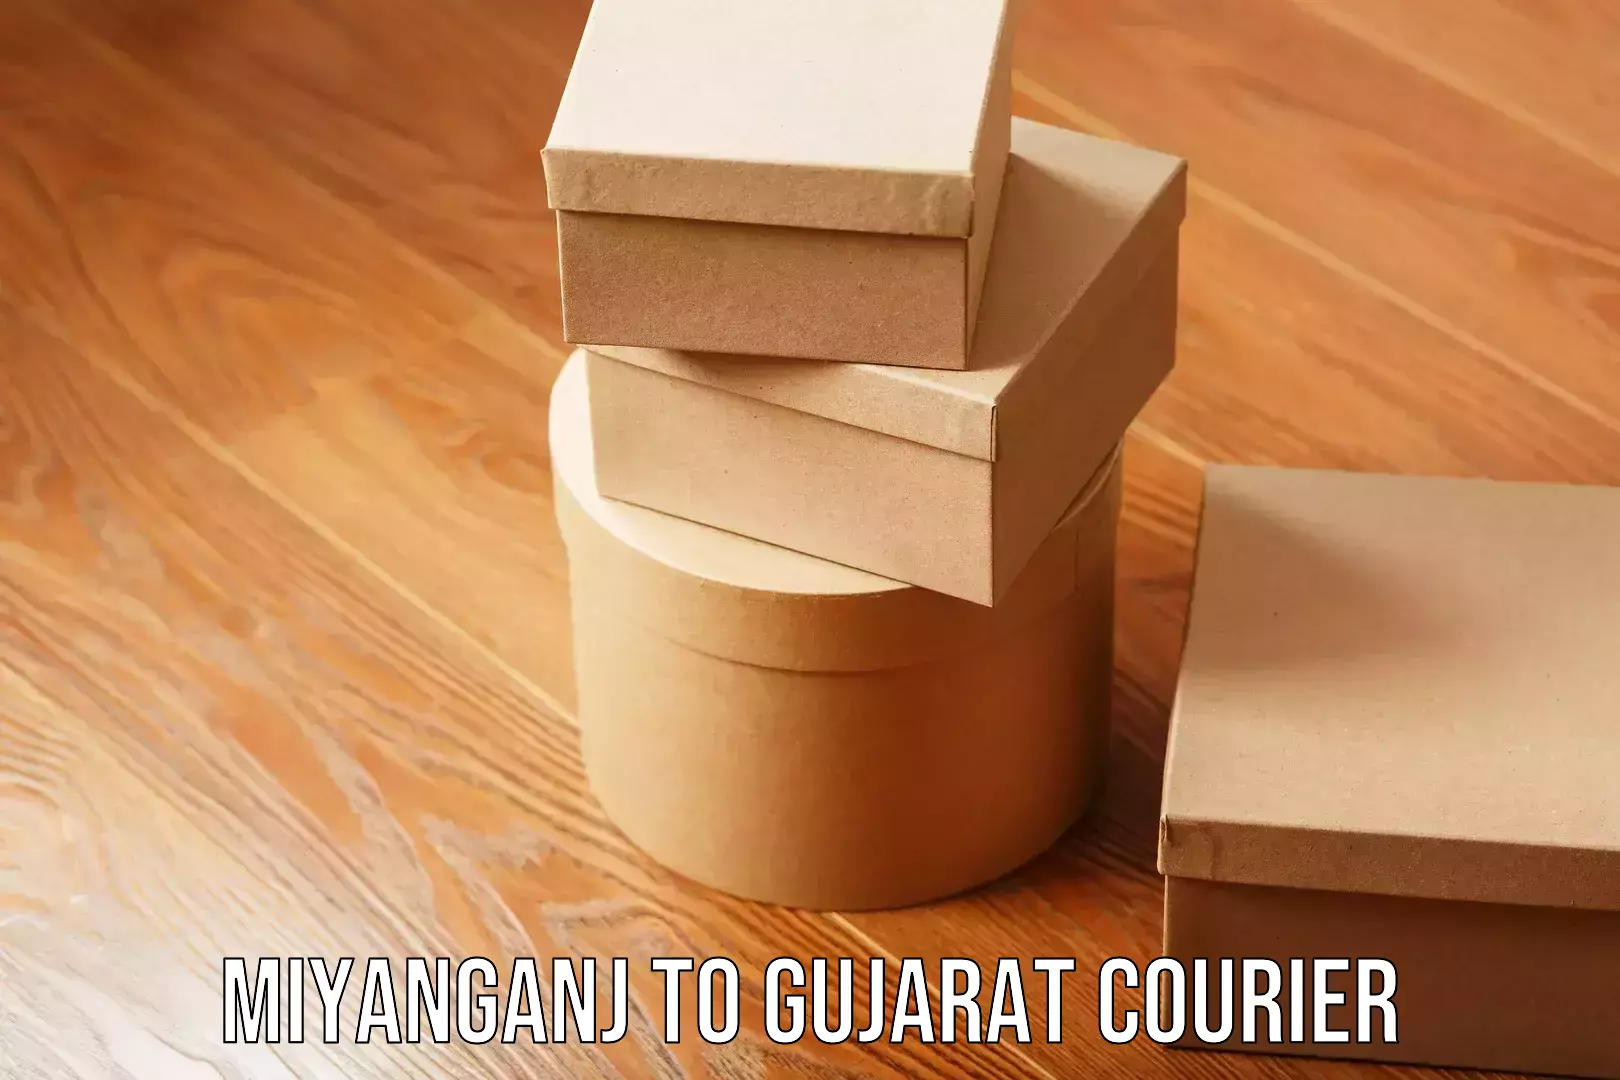 Moving and handling services Miyanganj to Gujarat